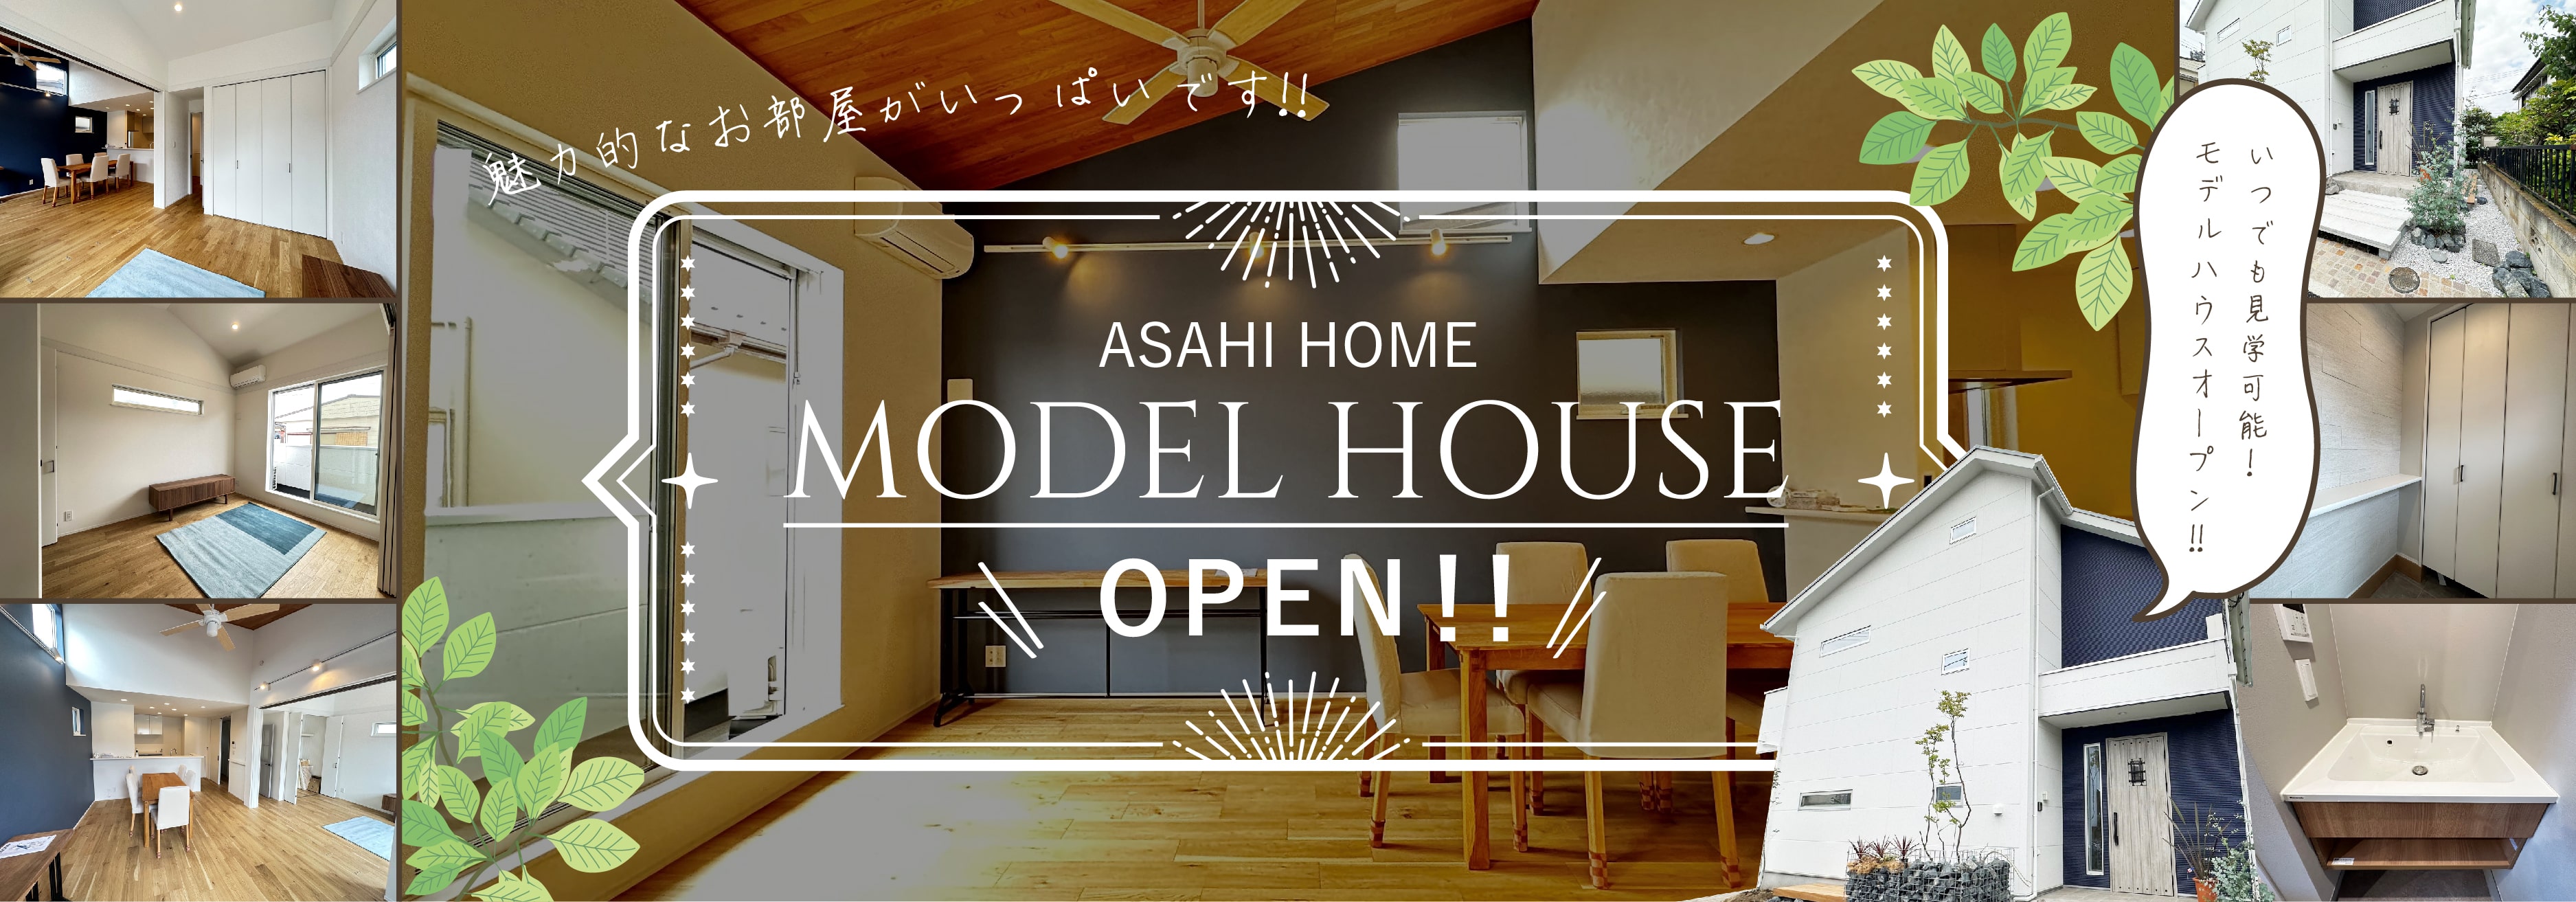 ASAHI HOME MODEL HOUSE OPEN！！ いつでも見学可能！ モデルハウスオープン！！ 魅力的なお部屋がいっぱいです！！